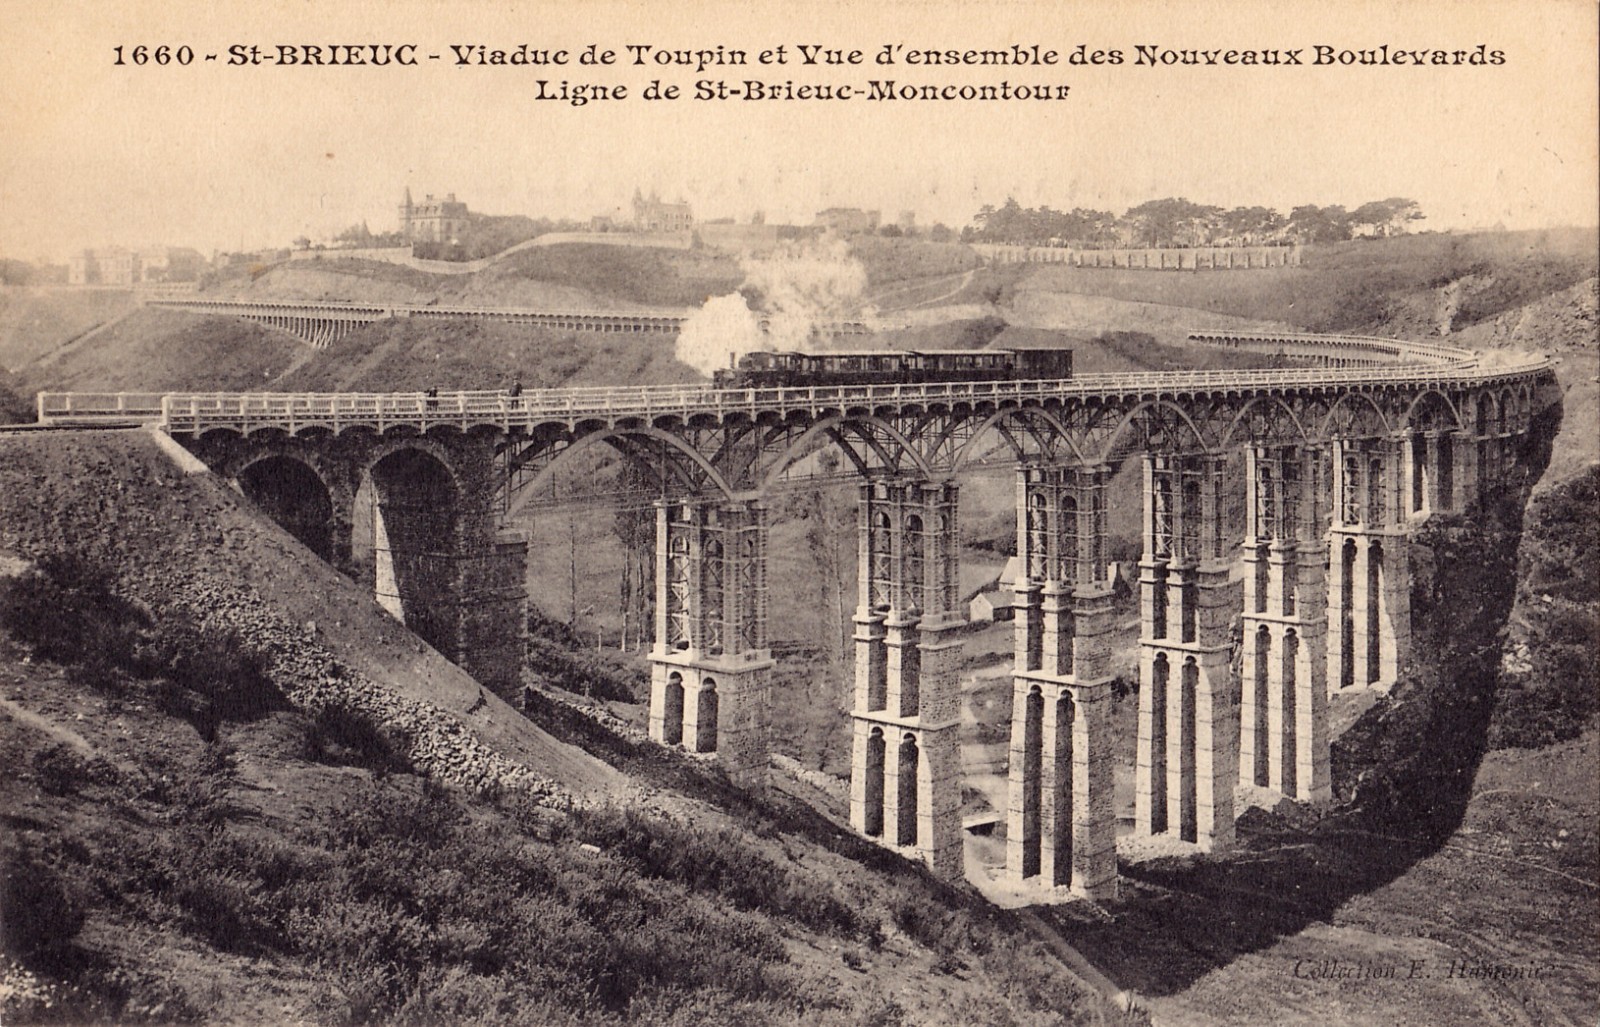 Carte postale représentant le viaduc de Toupin, ouvrage de Louis Harel de La Noë sur la Ligne de St-Brieuc à Moncontour. Source : Wikipédia